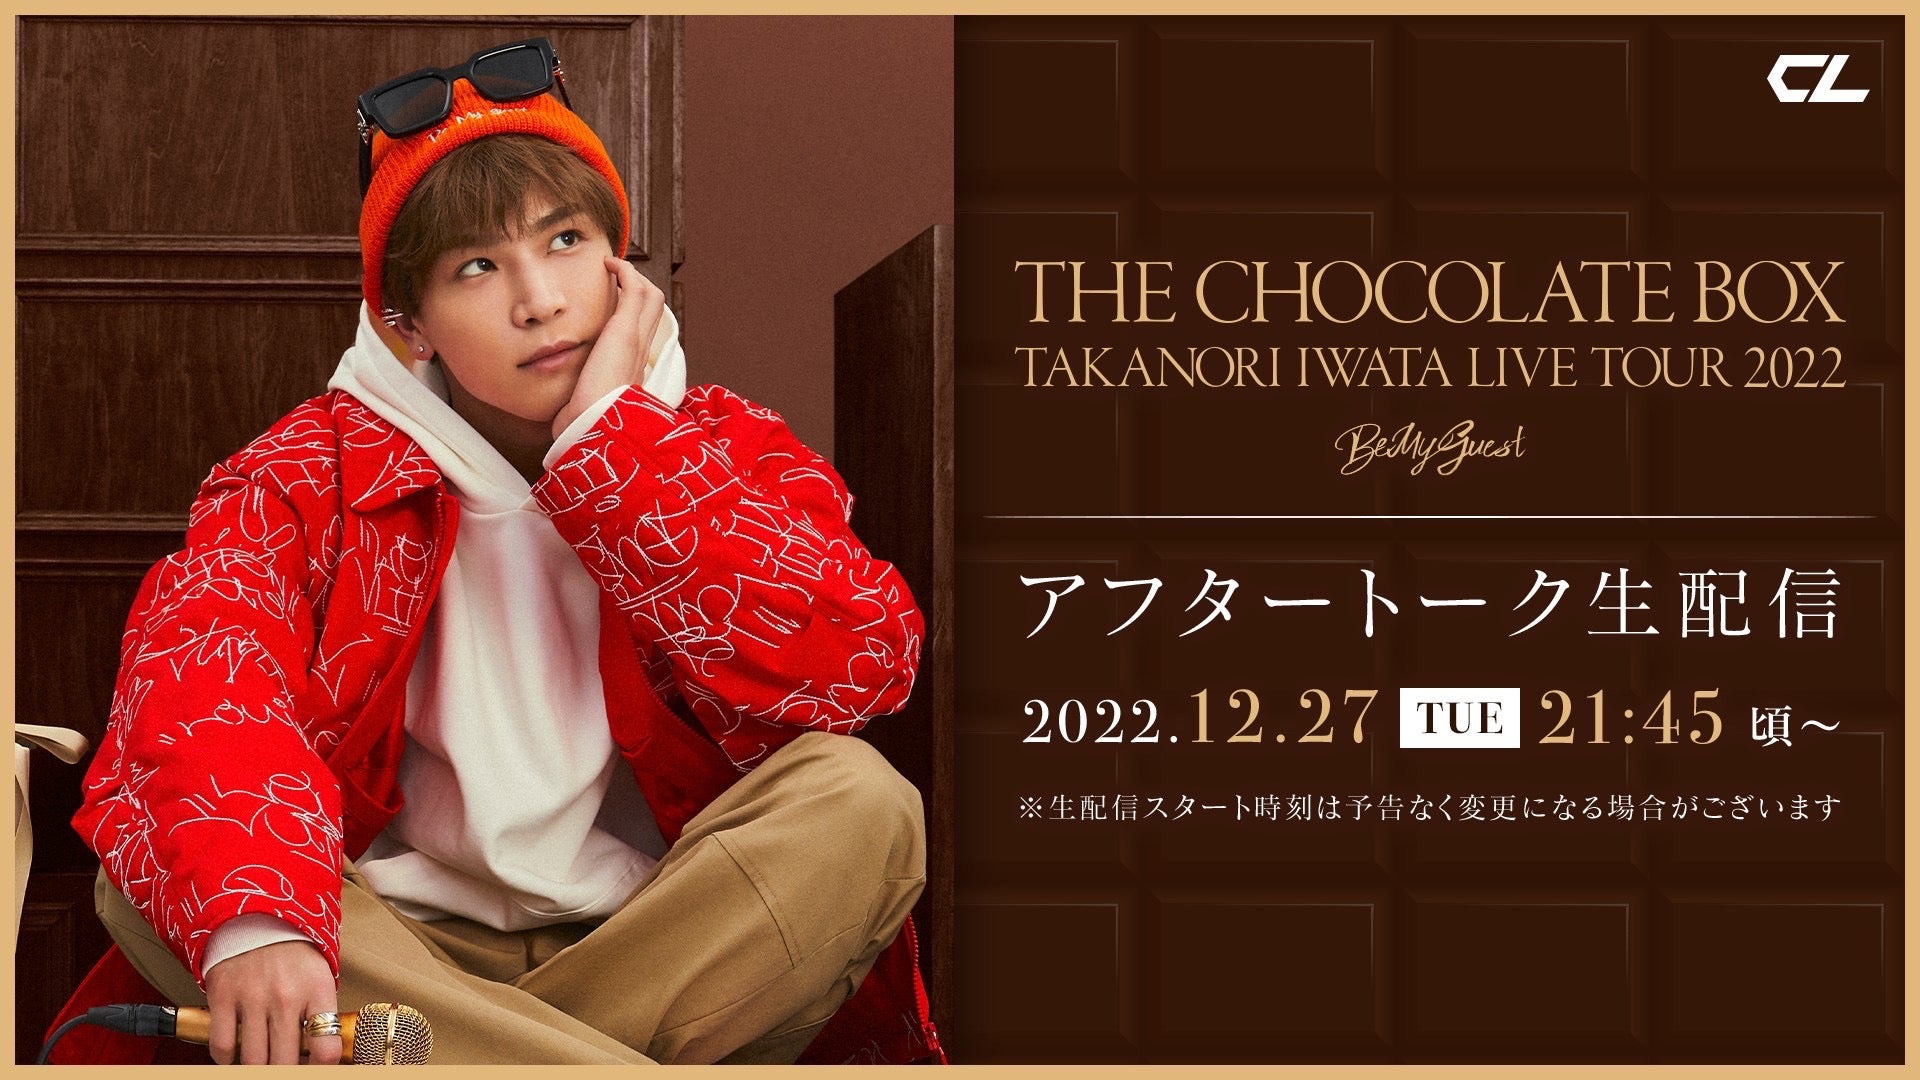 【アーカイブ】岩田剛典「Takanori Iwata LIVE TOUR 2022 “THE CHOCOLATE BOX” 」アフタートーク生配信